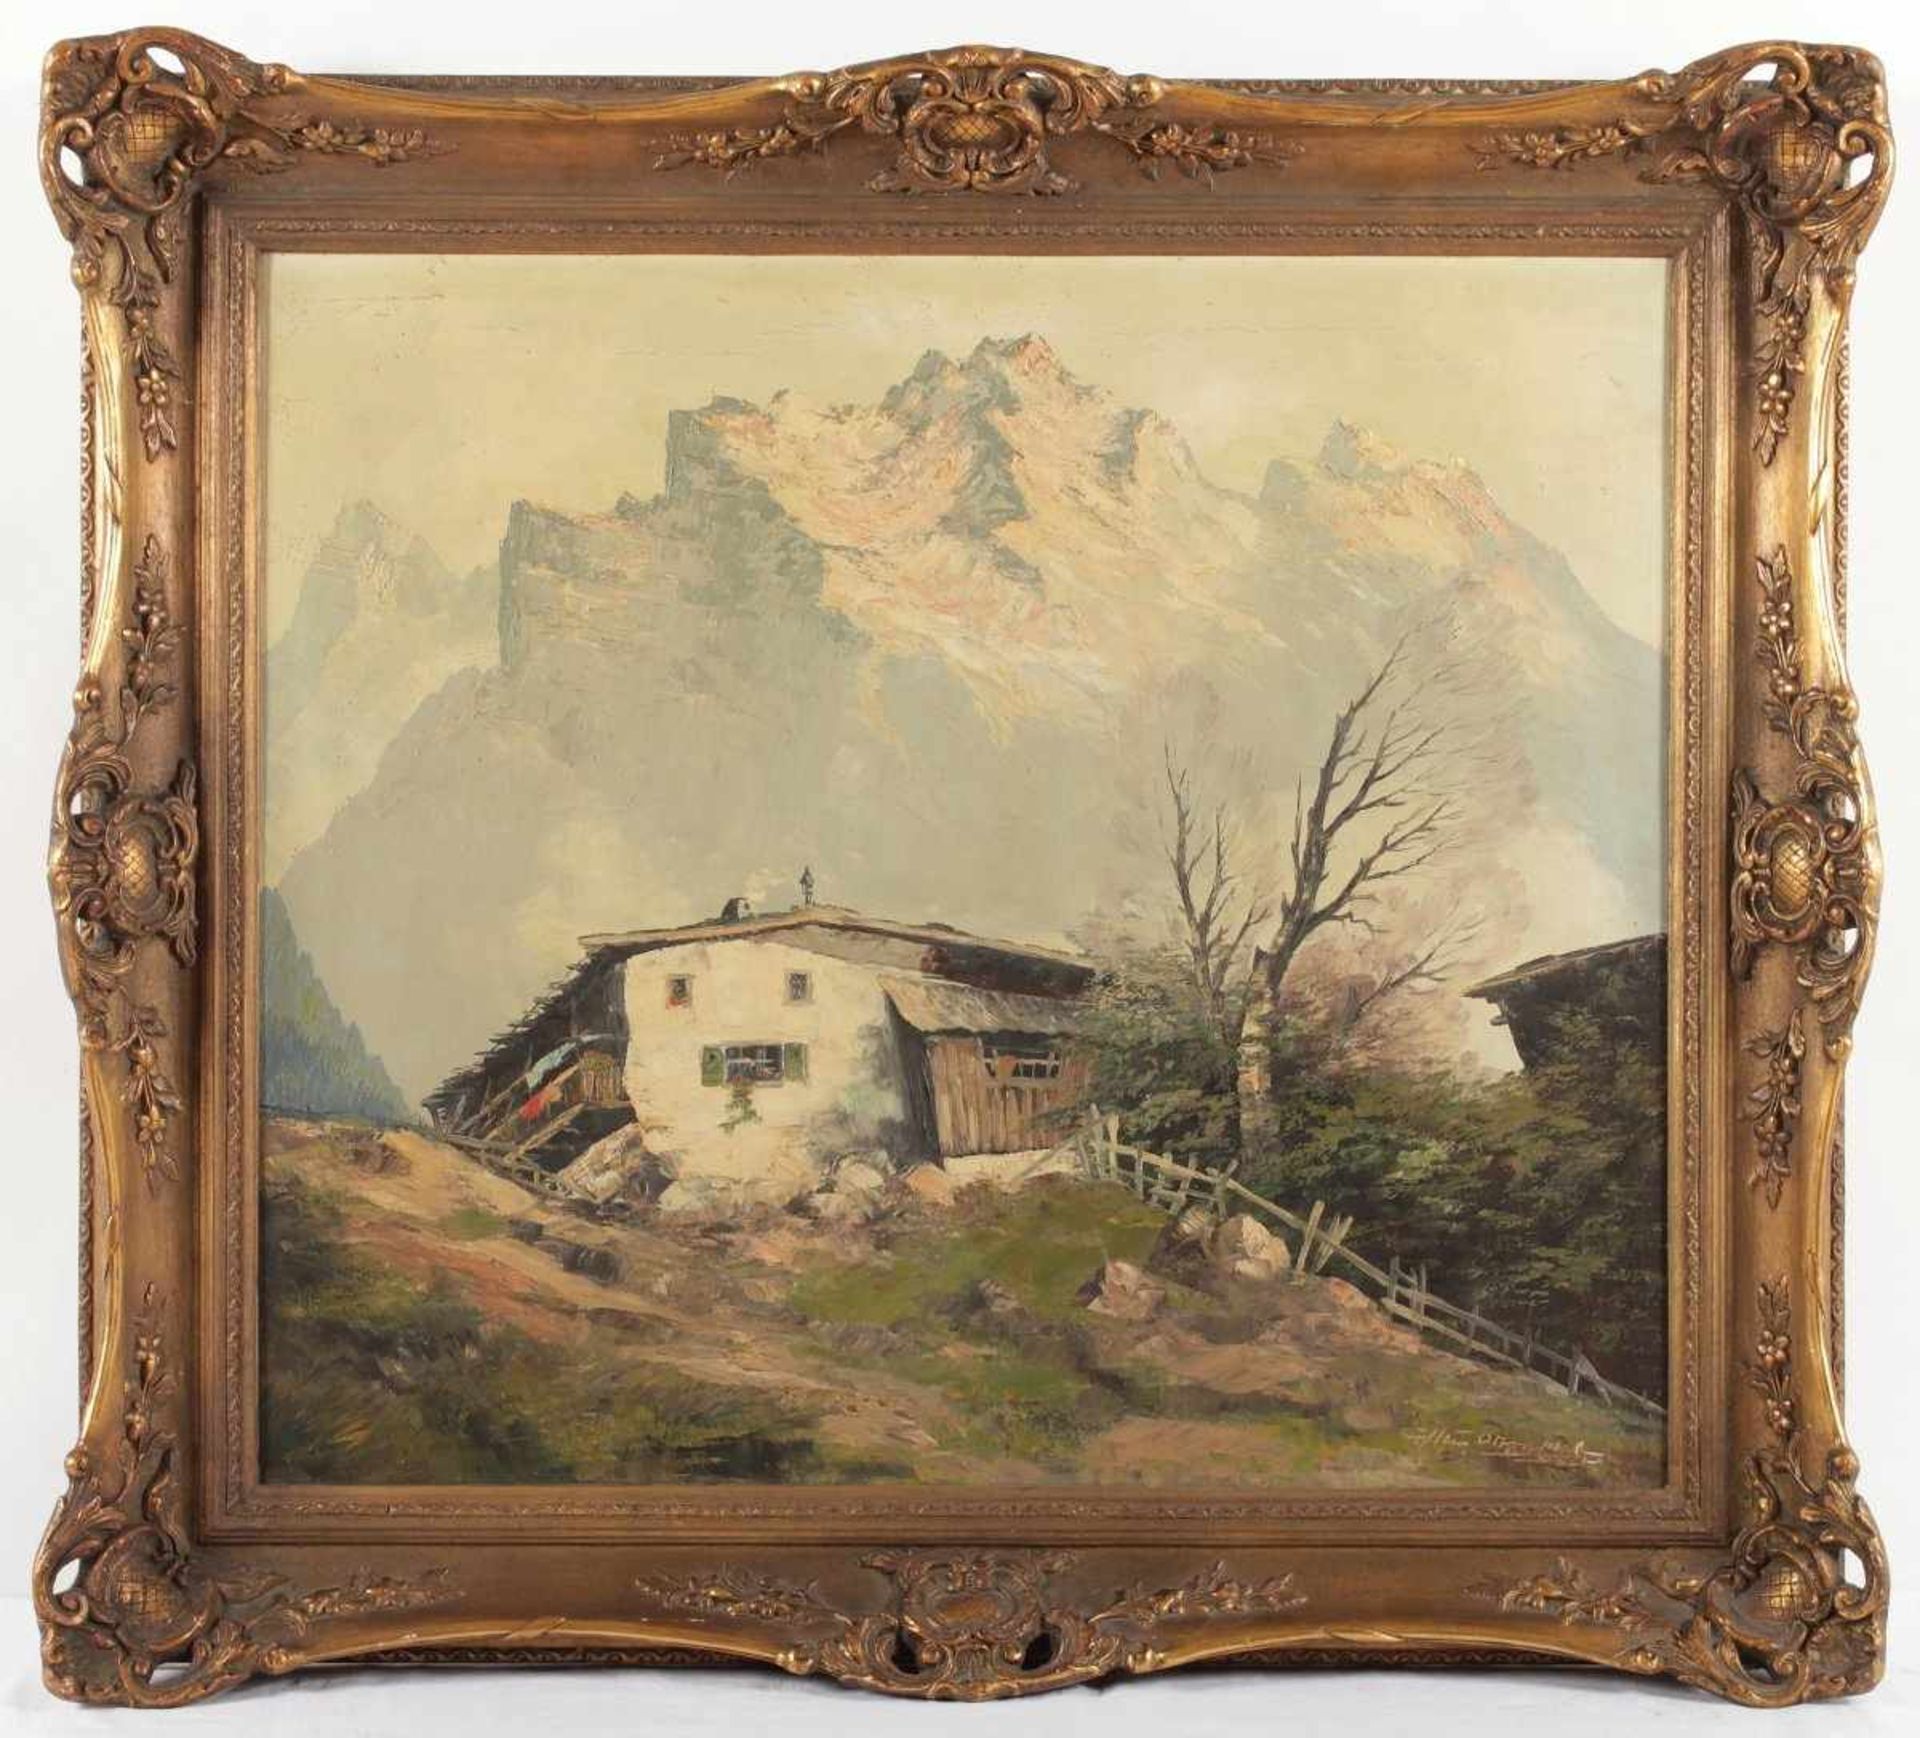 OTTENTHAL, Hein (deutsch, M.20.Jh.), "Bergbauer im Zoldotal in den Dolomiten", Öl/Lwd., 70 x 80,